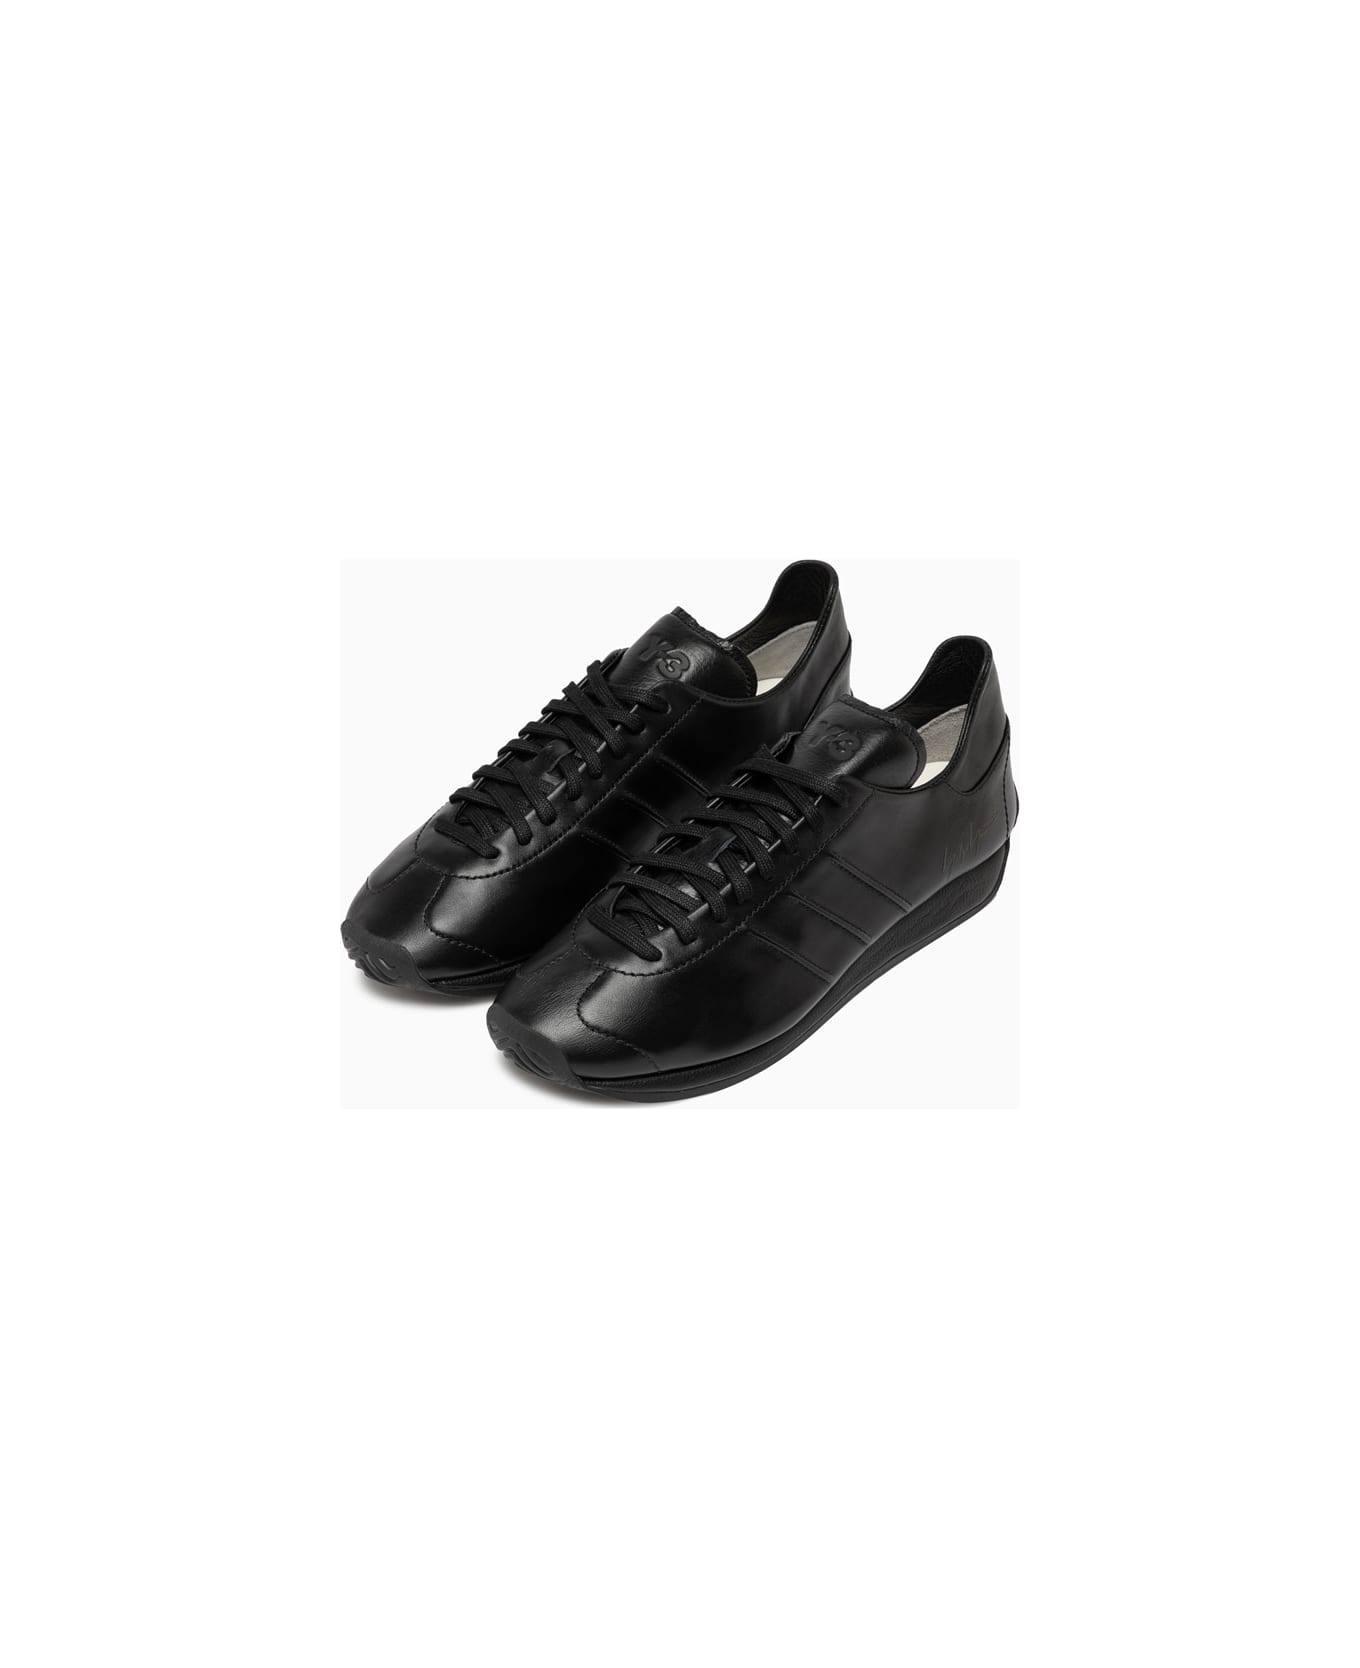 Y-3 Adidas Y-3 Country Sneakers Ie5697 - Black スニーカー